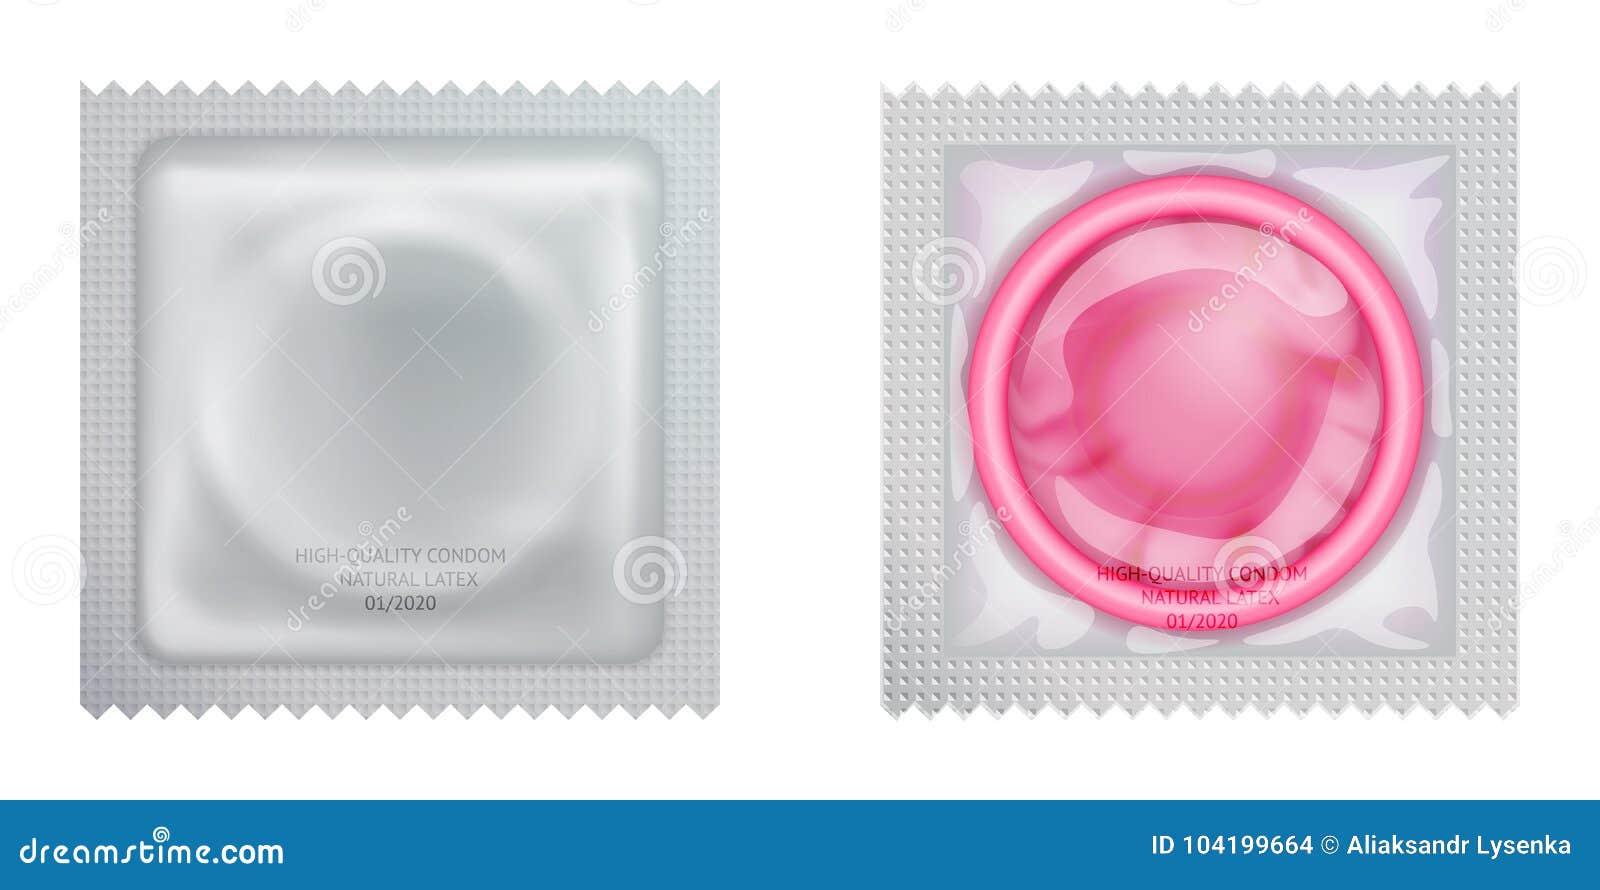 避孕套如何区分正反 。求图解？ - 知乎